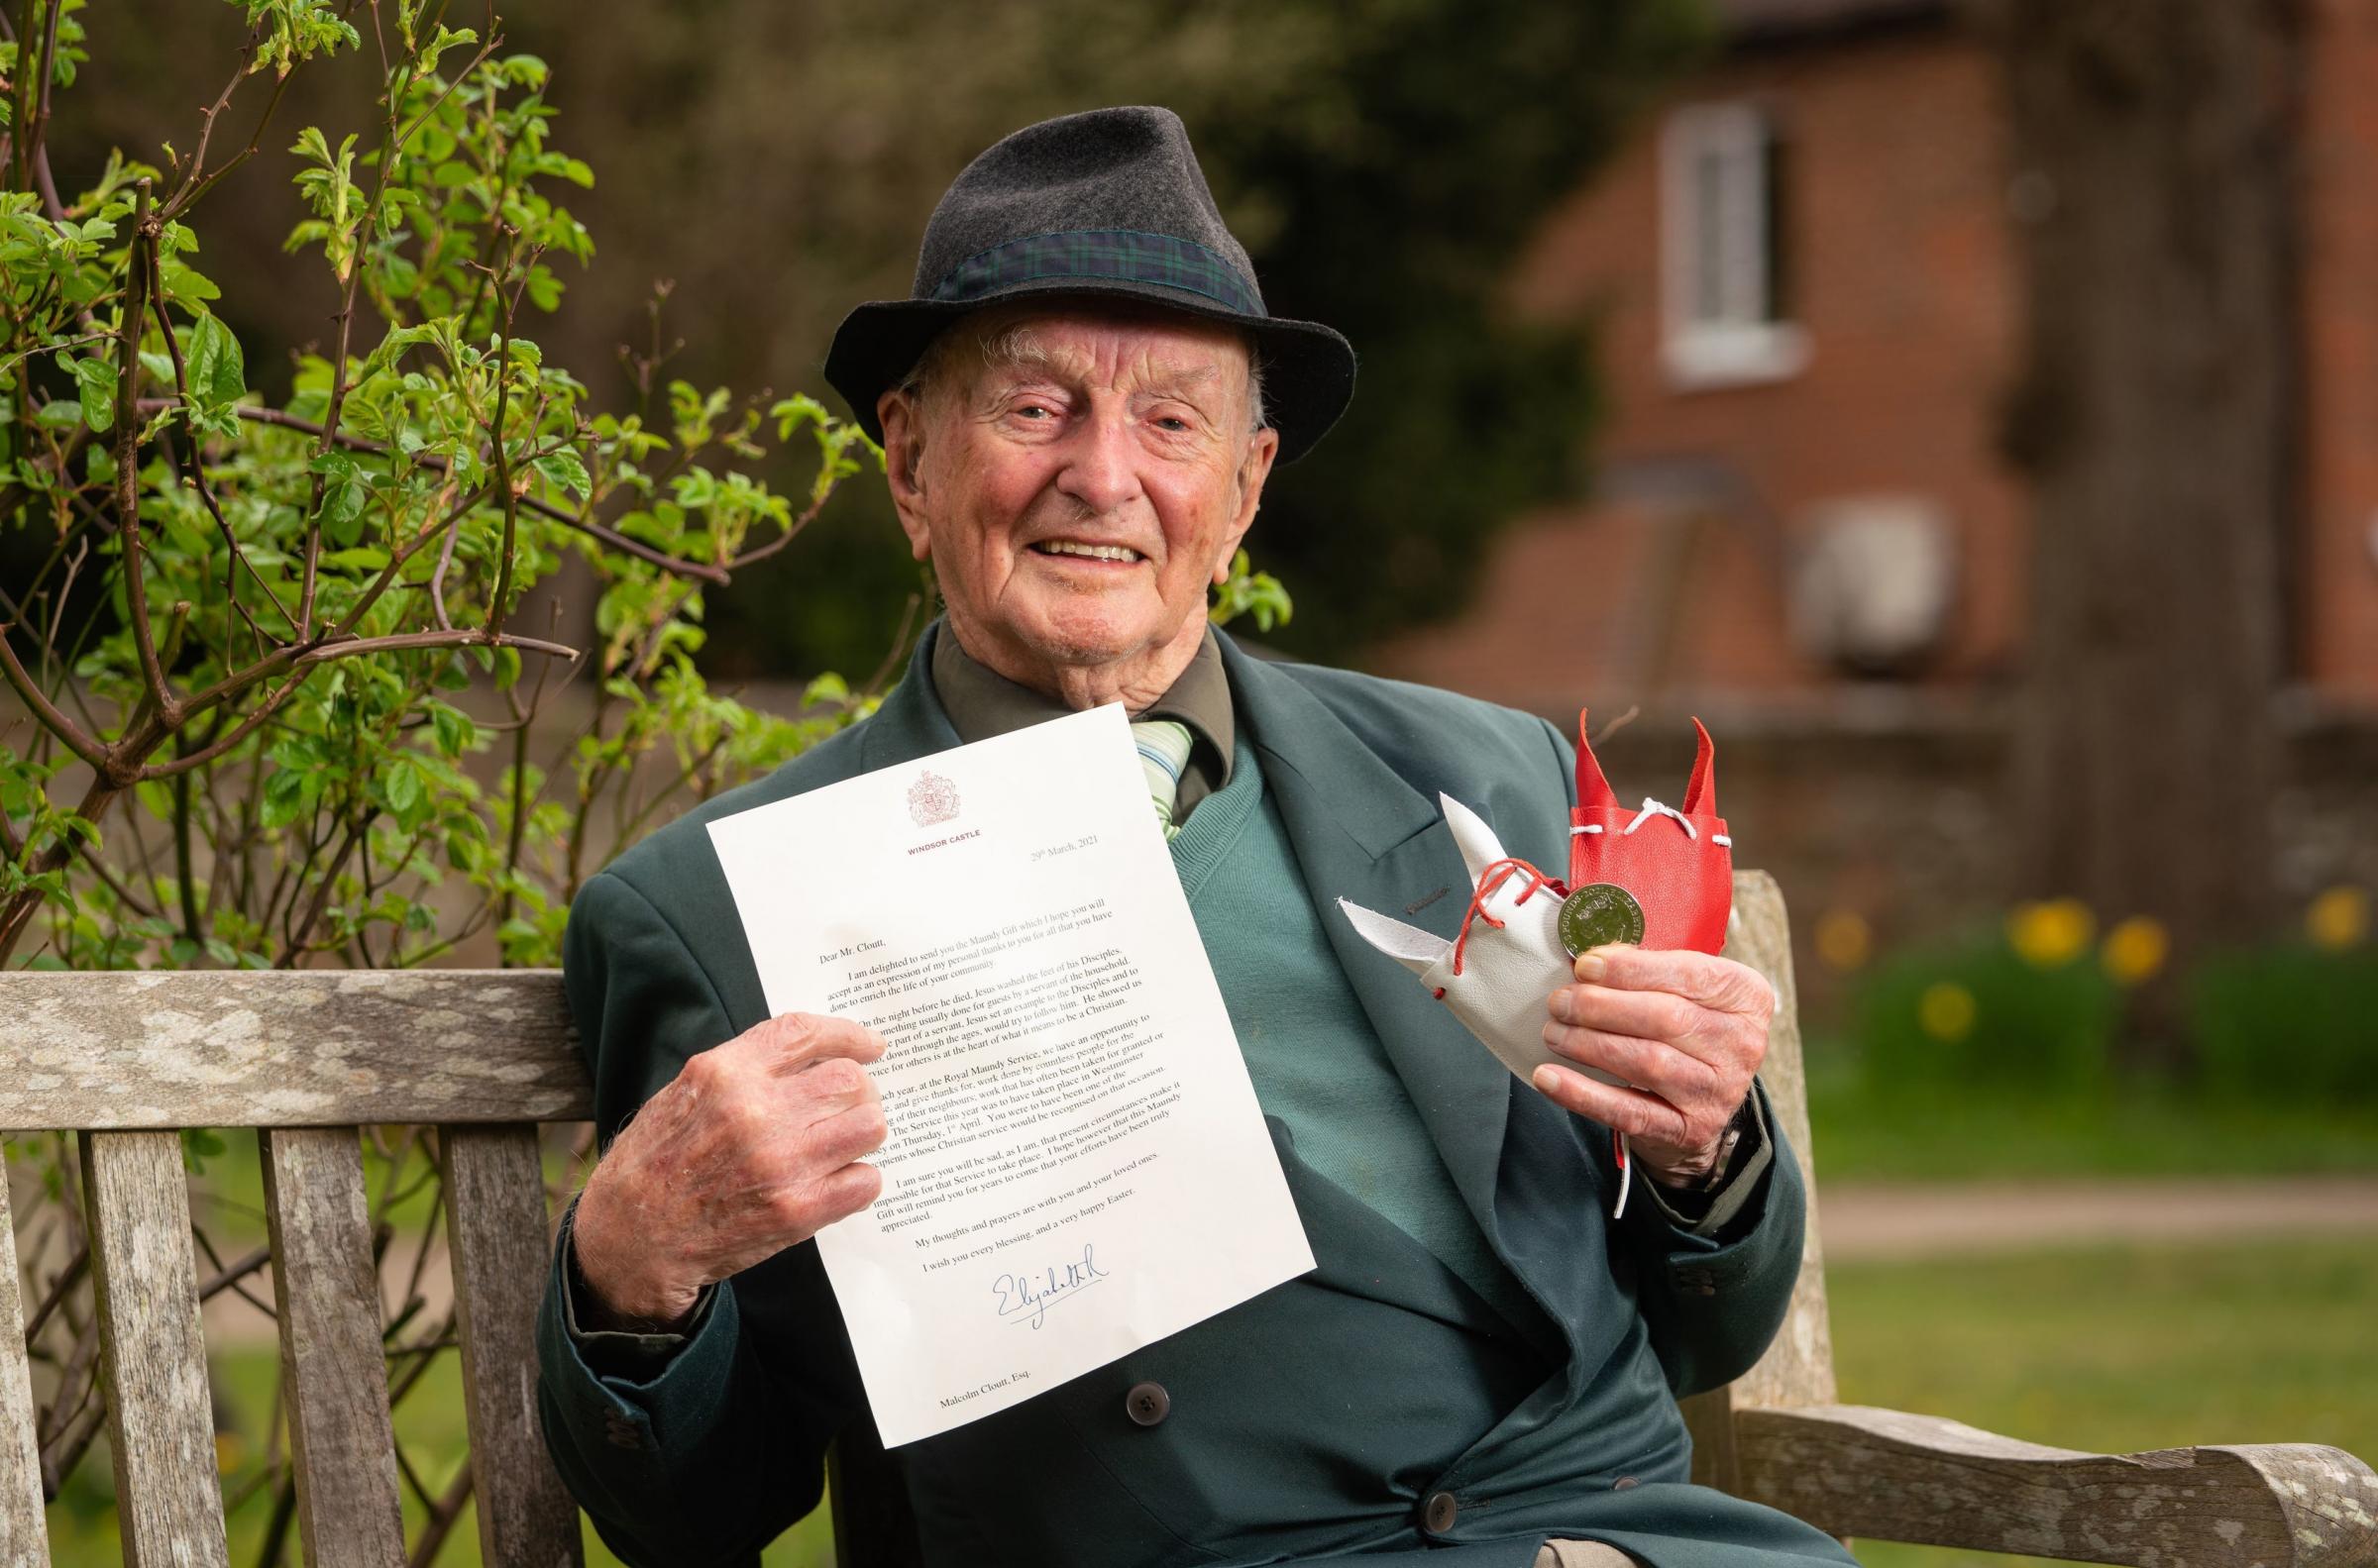 Malcolm Cloutt de Princes Risborough, Buckinghamshire, un pilote vétéran de la RAF de la Seconde Guerre mondiale qui a servi en Europe et en Birmanie et qui a eu 100 ans l'année dernière, et qui fait partie des récipiendaires de l'argent Maundy cette année Photo: DOMINIC LIPINSKI / PA